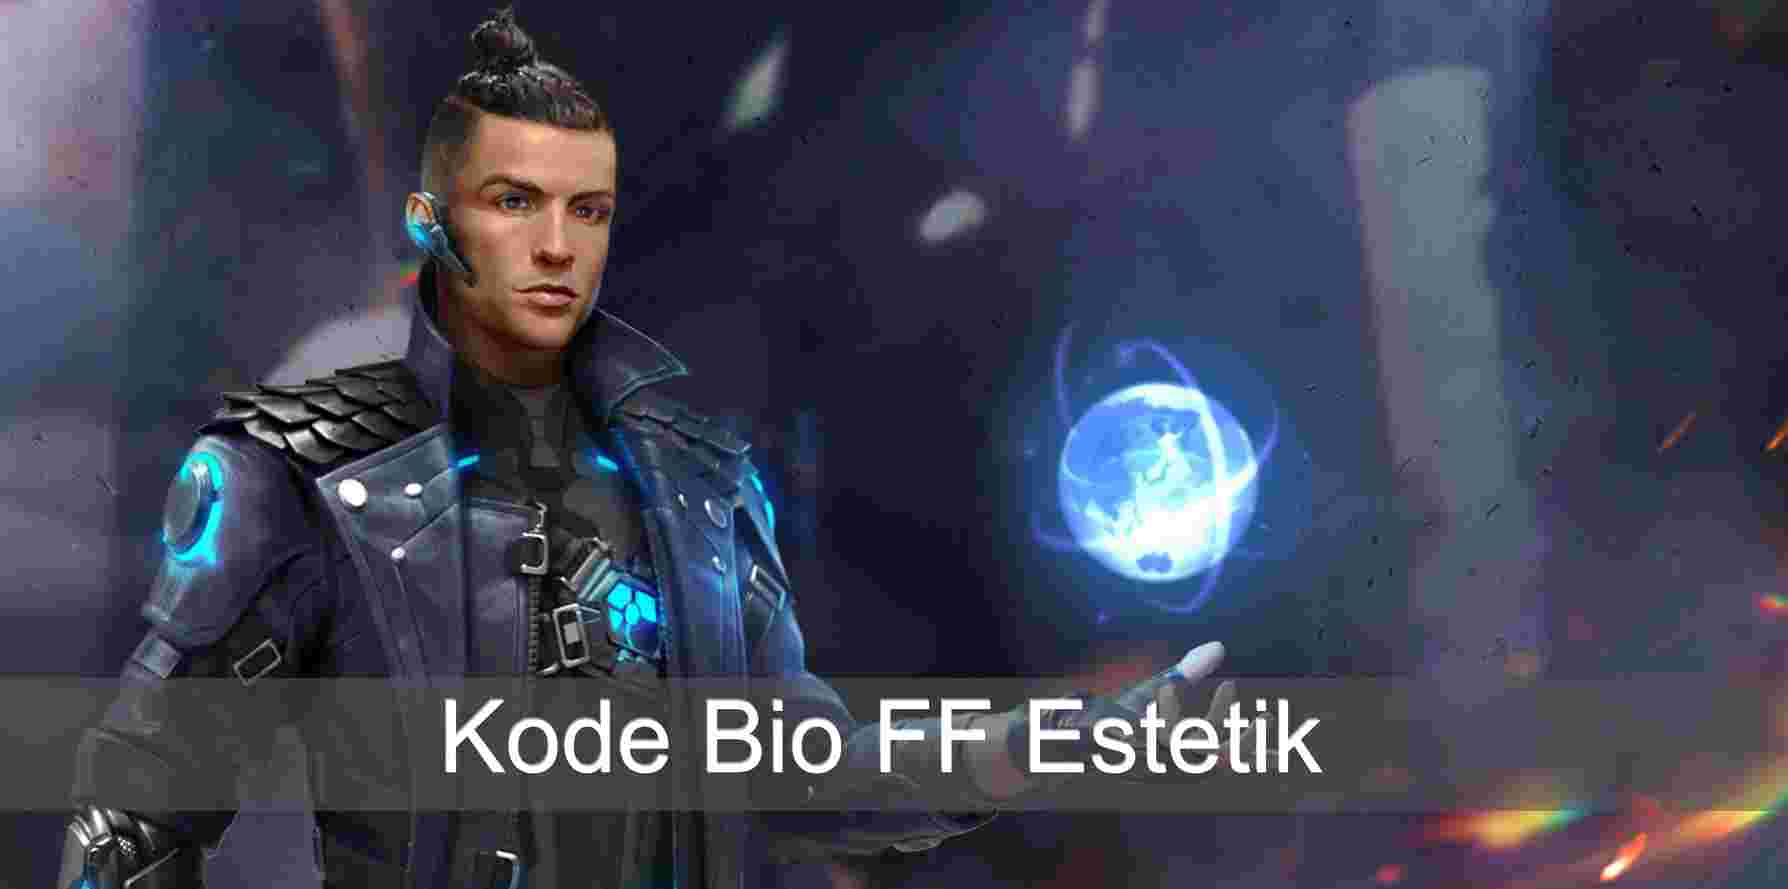 Kumpulan Bio FF Estetik
